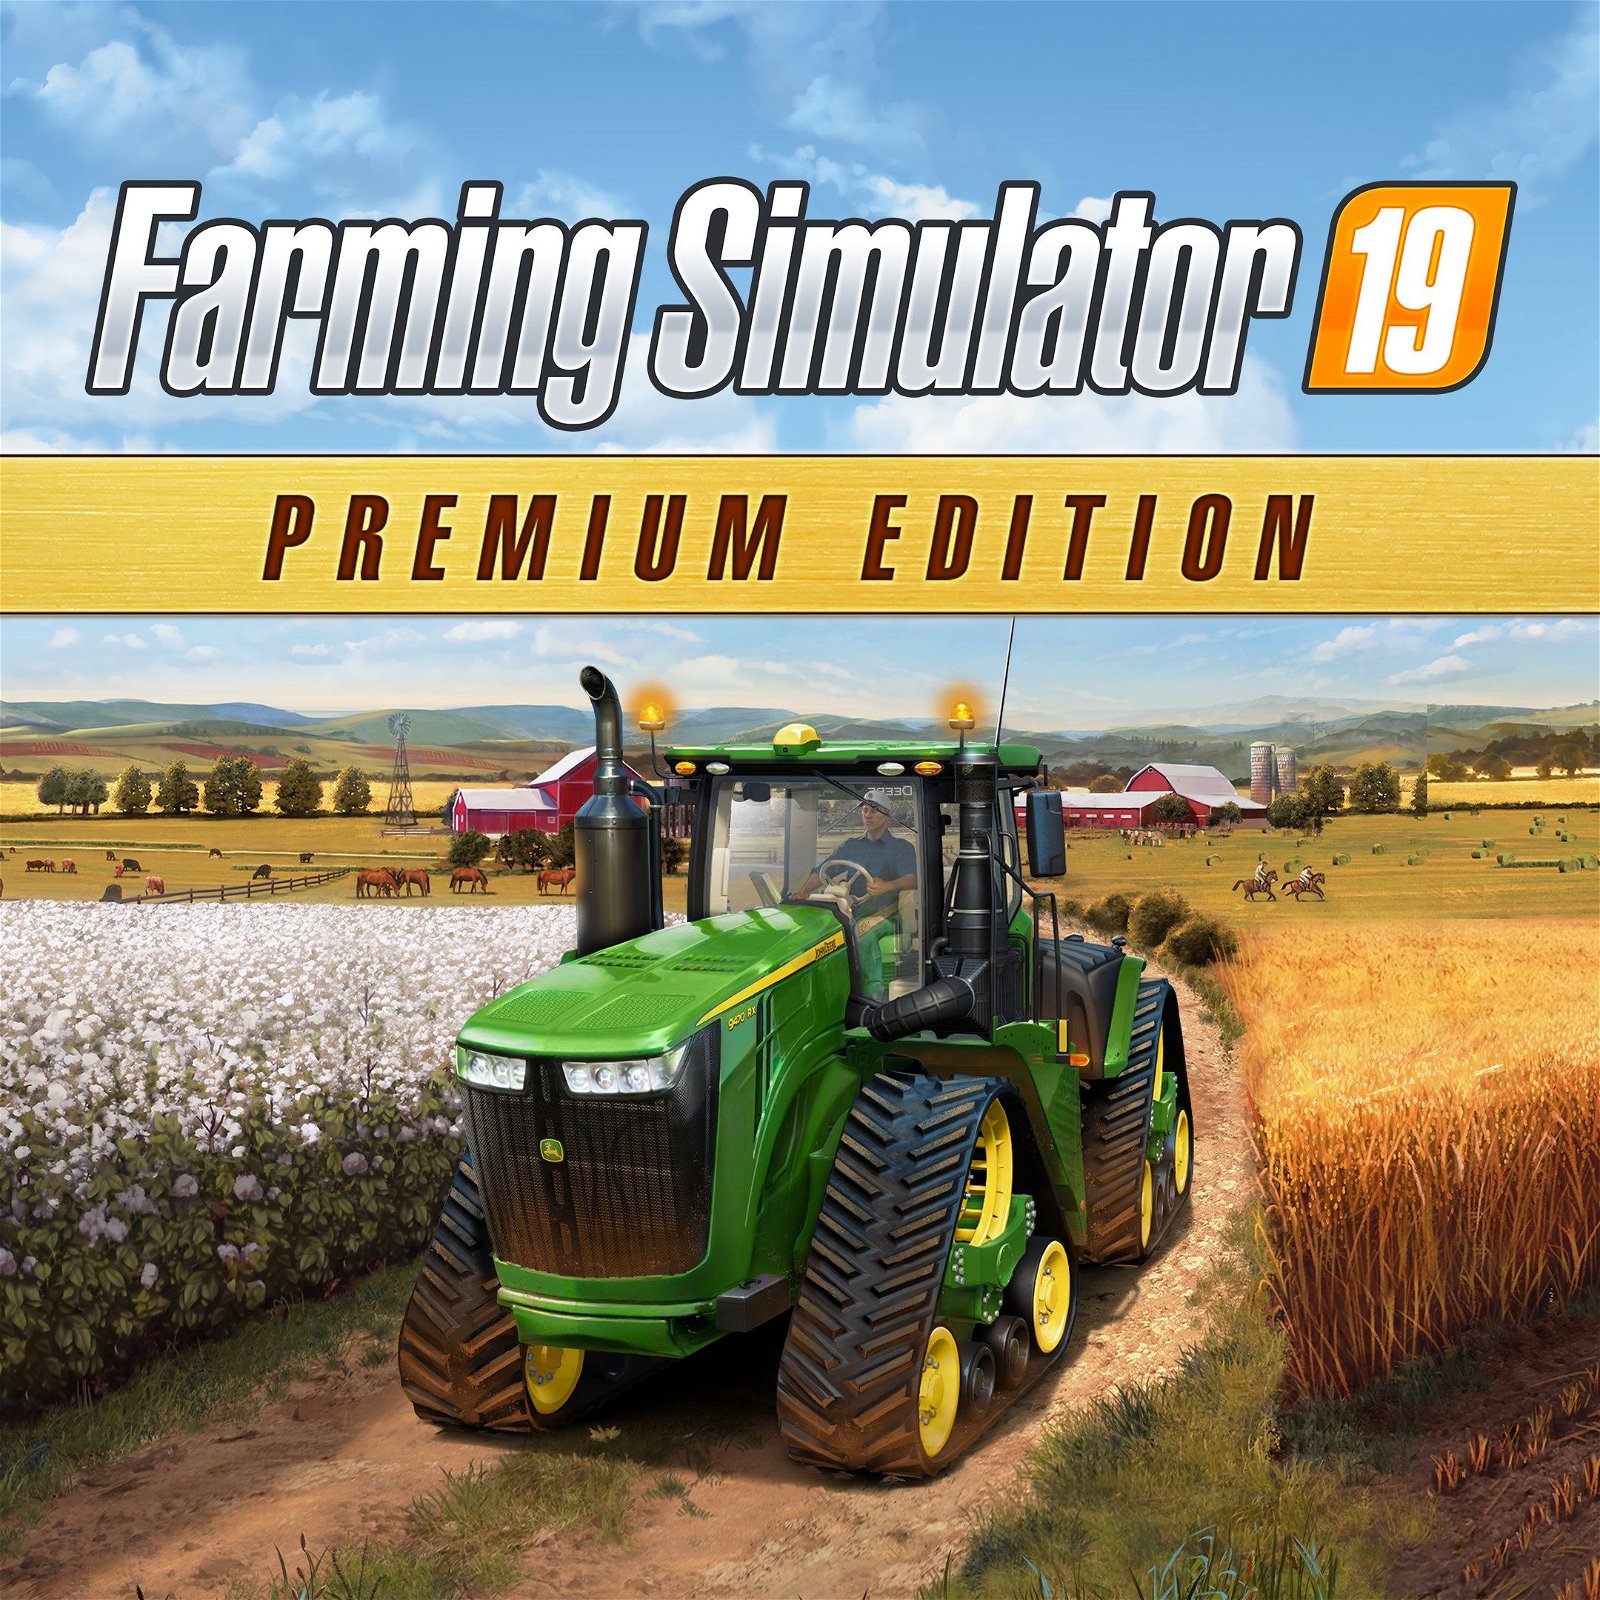 Image of Farming Simulator 19 - Premium Edition